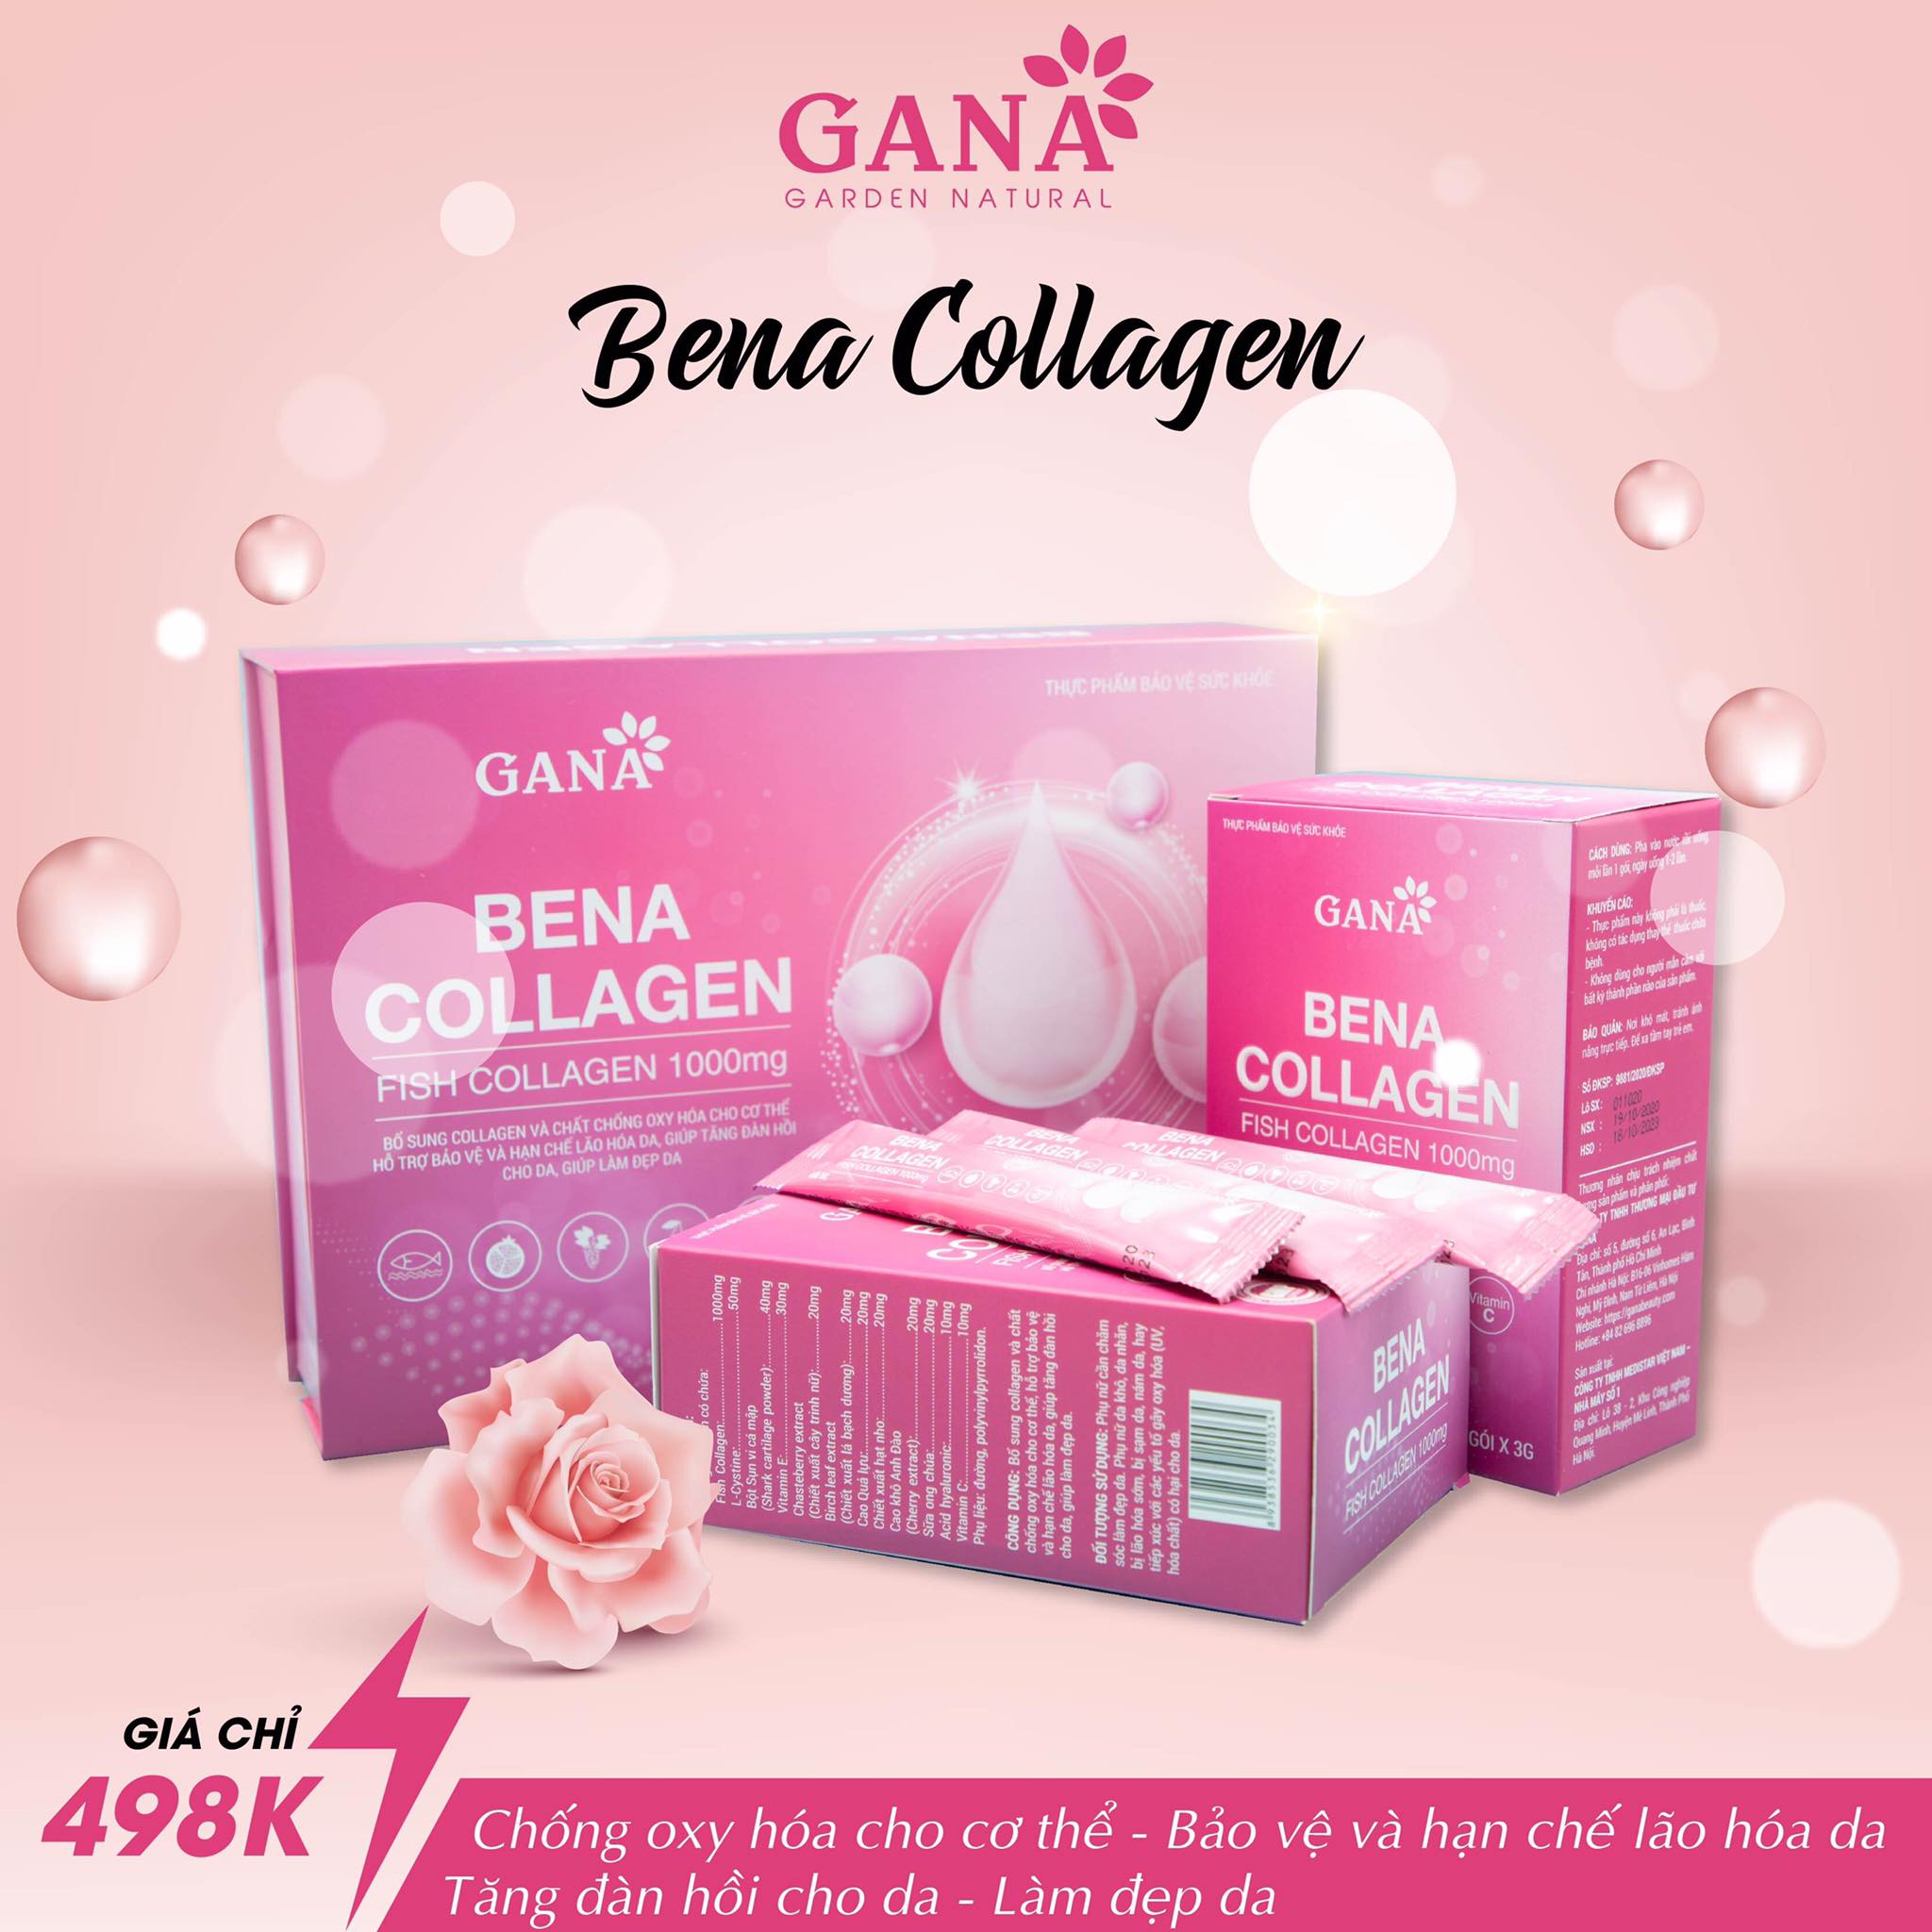 Bena Collagen Gana là gì?